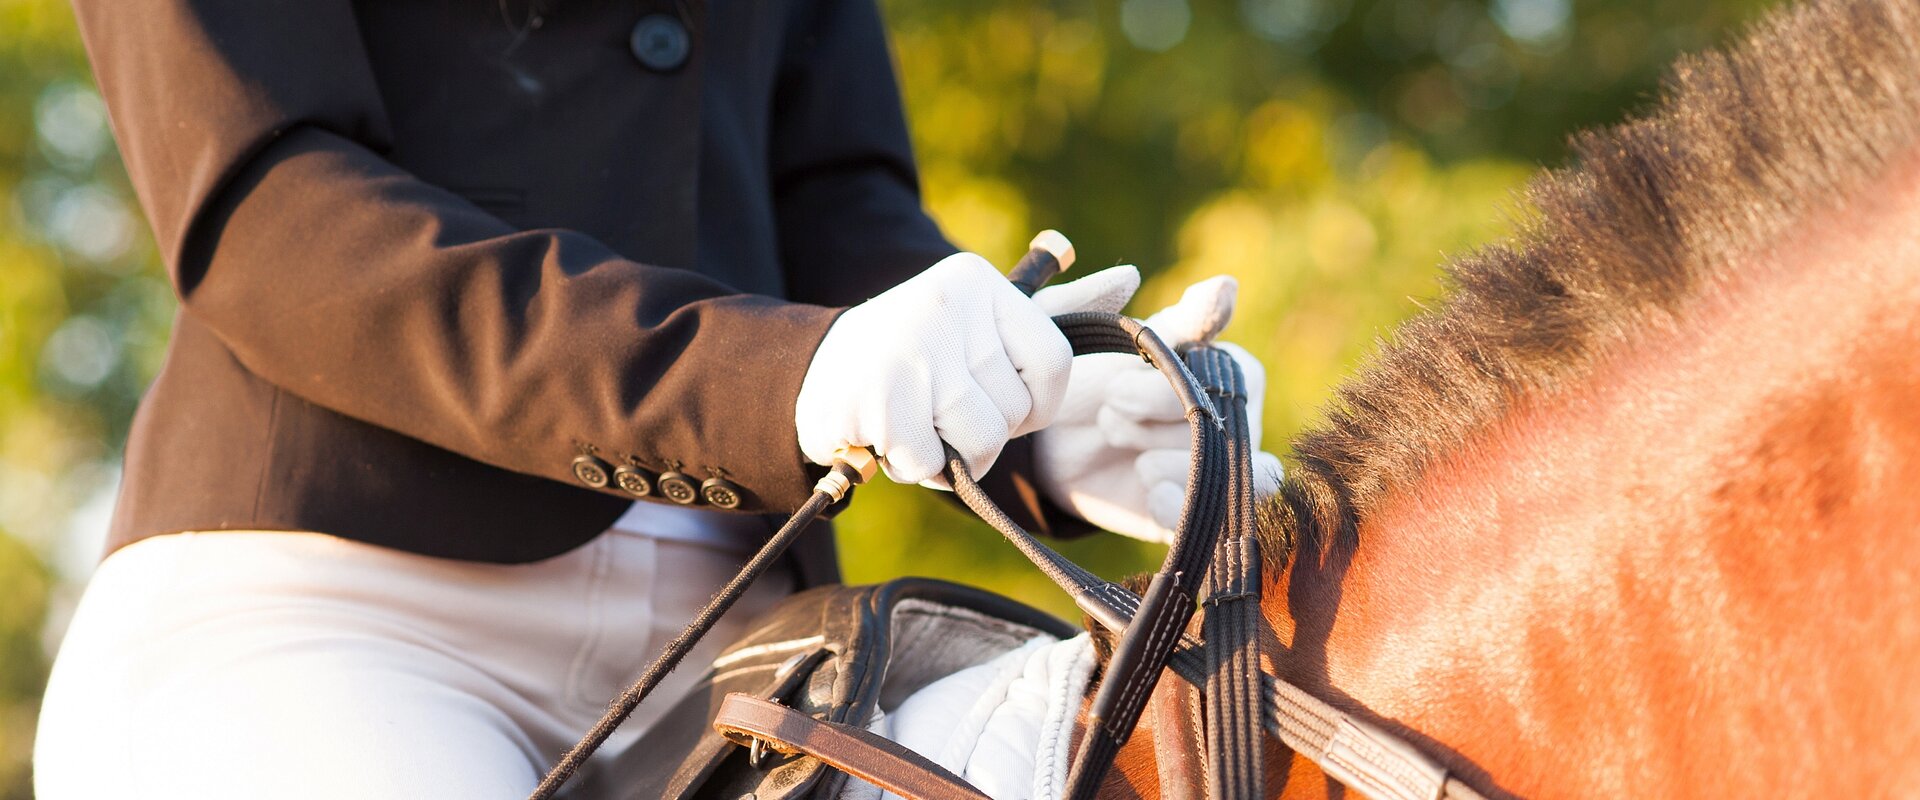 Nahaufnahme der behandschuhten Hände einer Reiterin, die auf einem braunen Pferd sitzt und in der geschlossenen Hand eine Reitgerte und die Zügel hält